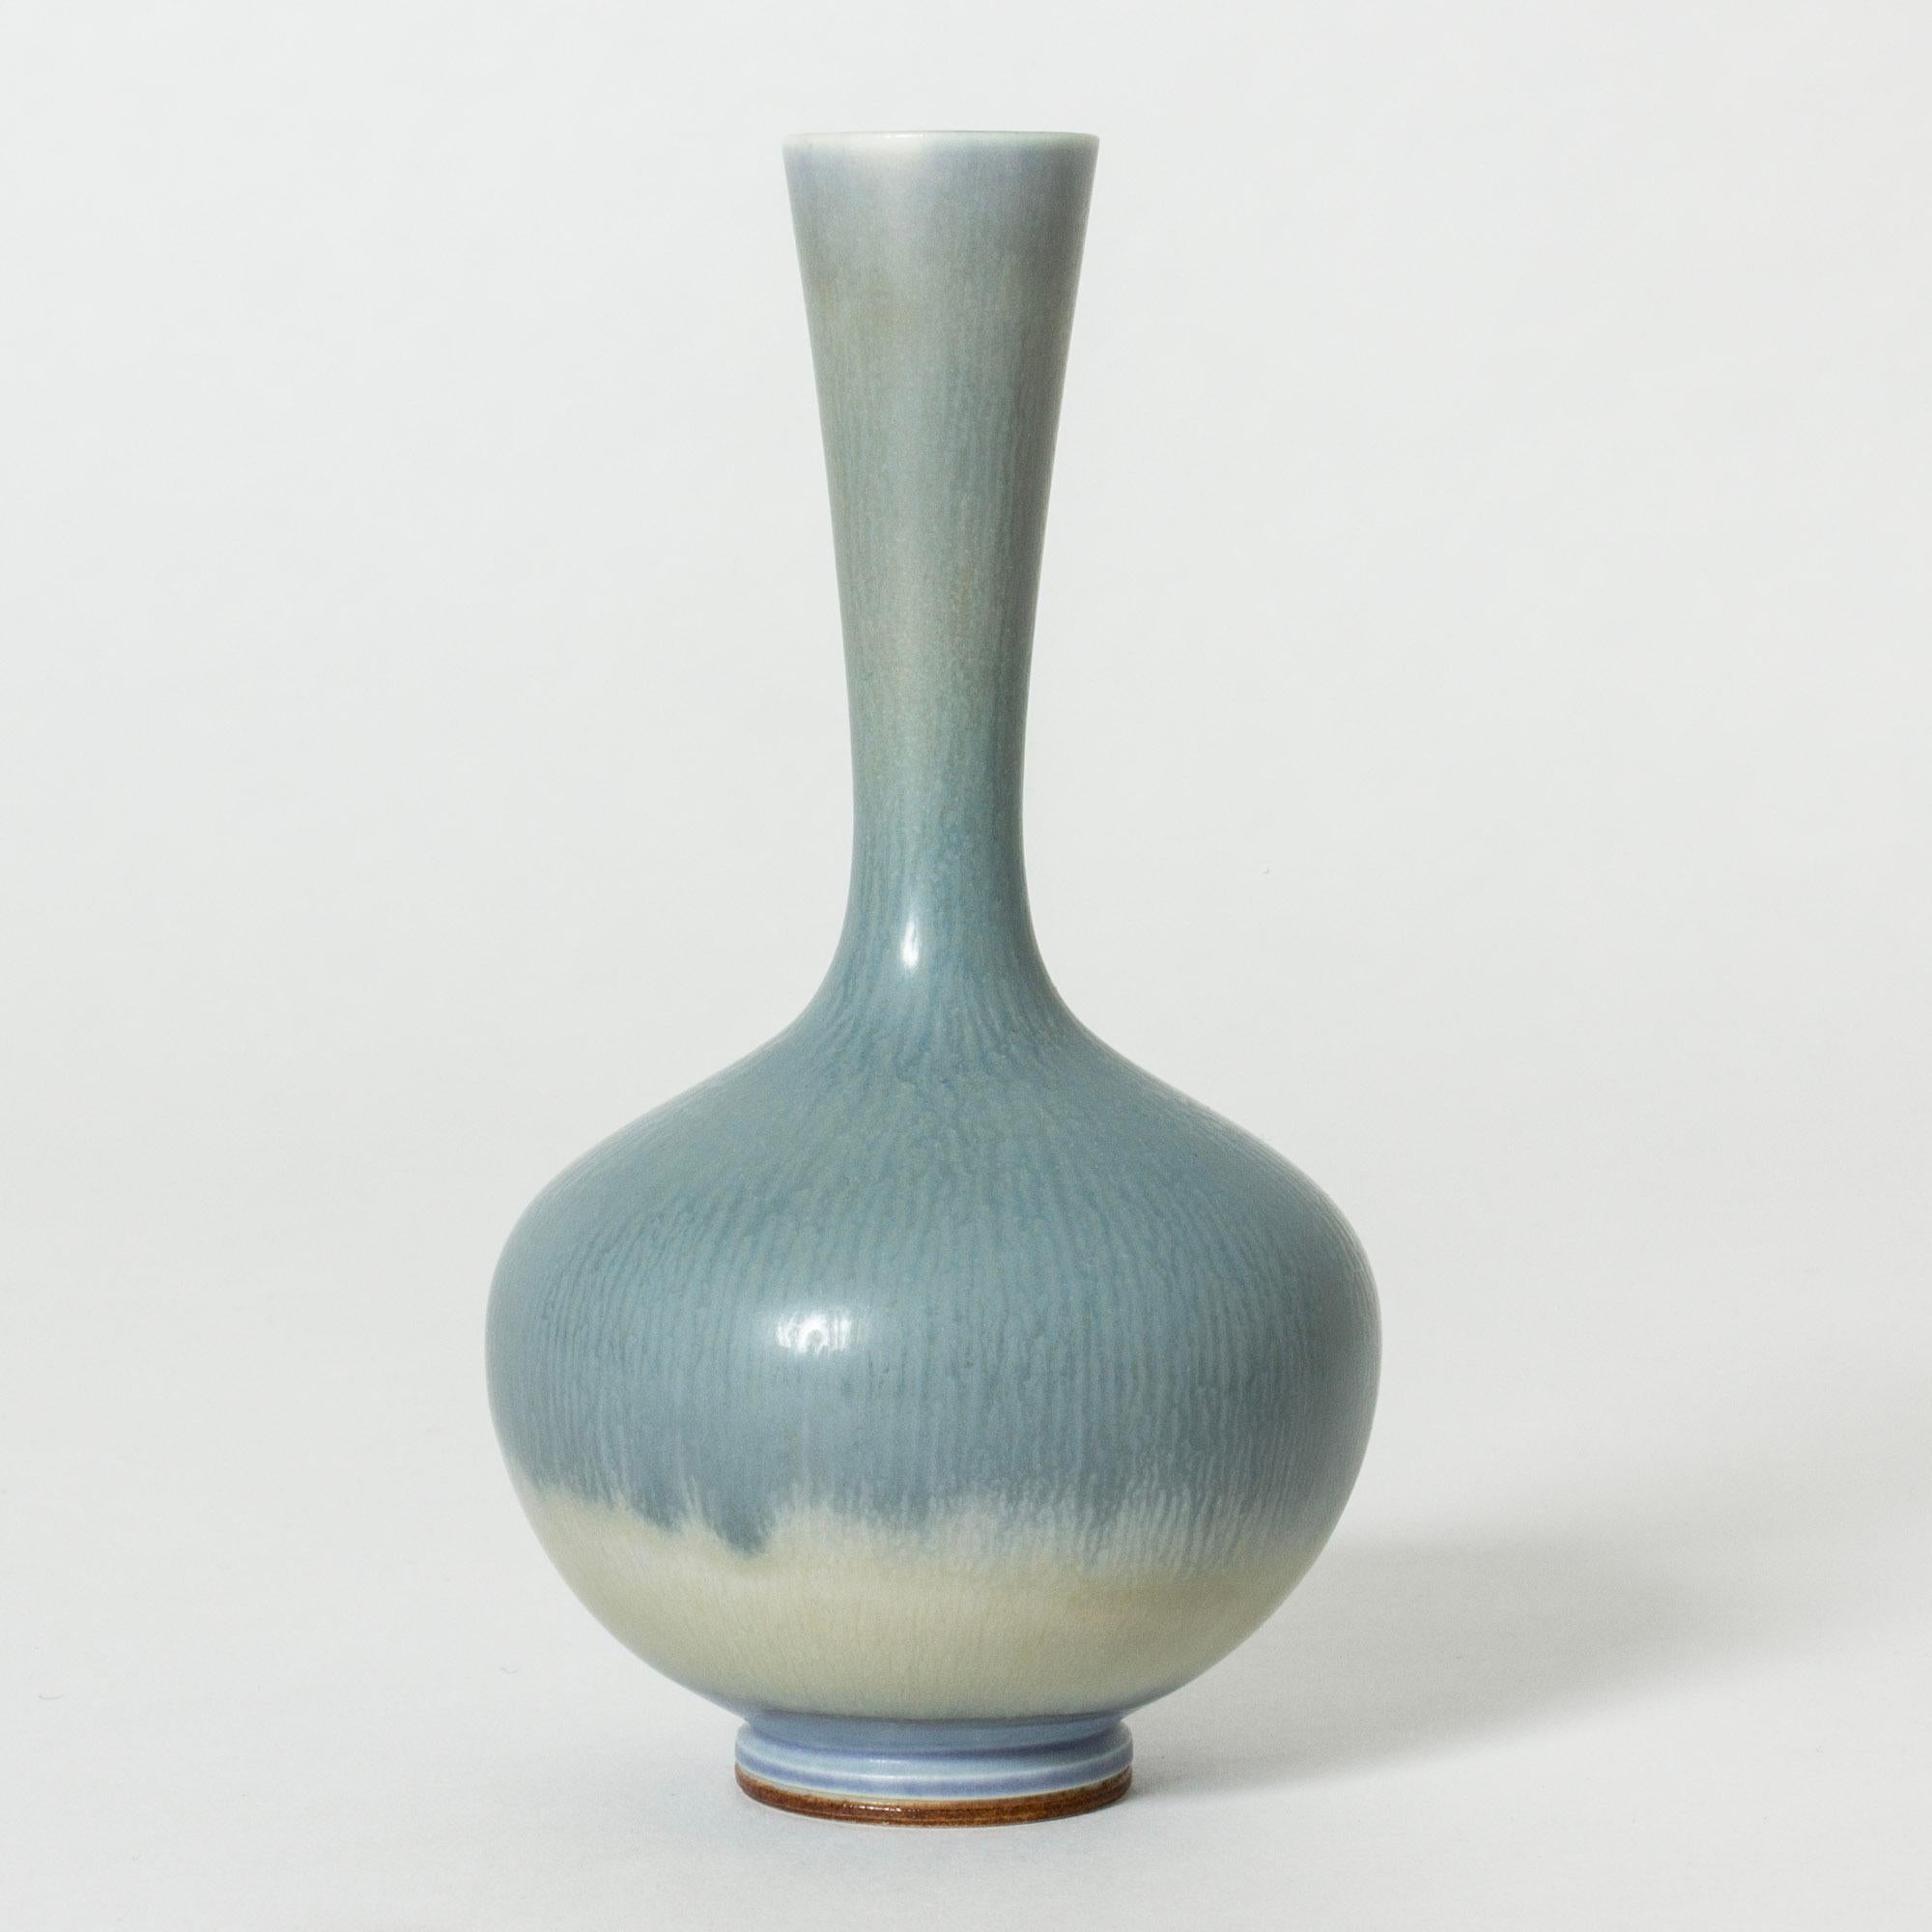 Hübsche Steinzeugvase von Berndt Friberg mit schlankem Hals und prallem, zwiebelförmigem Boden. Himmelblau mit Übergang zu weißer Hasenfellglasur.

Berndt Friberg war ein schwedischer Keramiker, der für seine Steinzeugvasen und -gefäße für